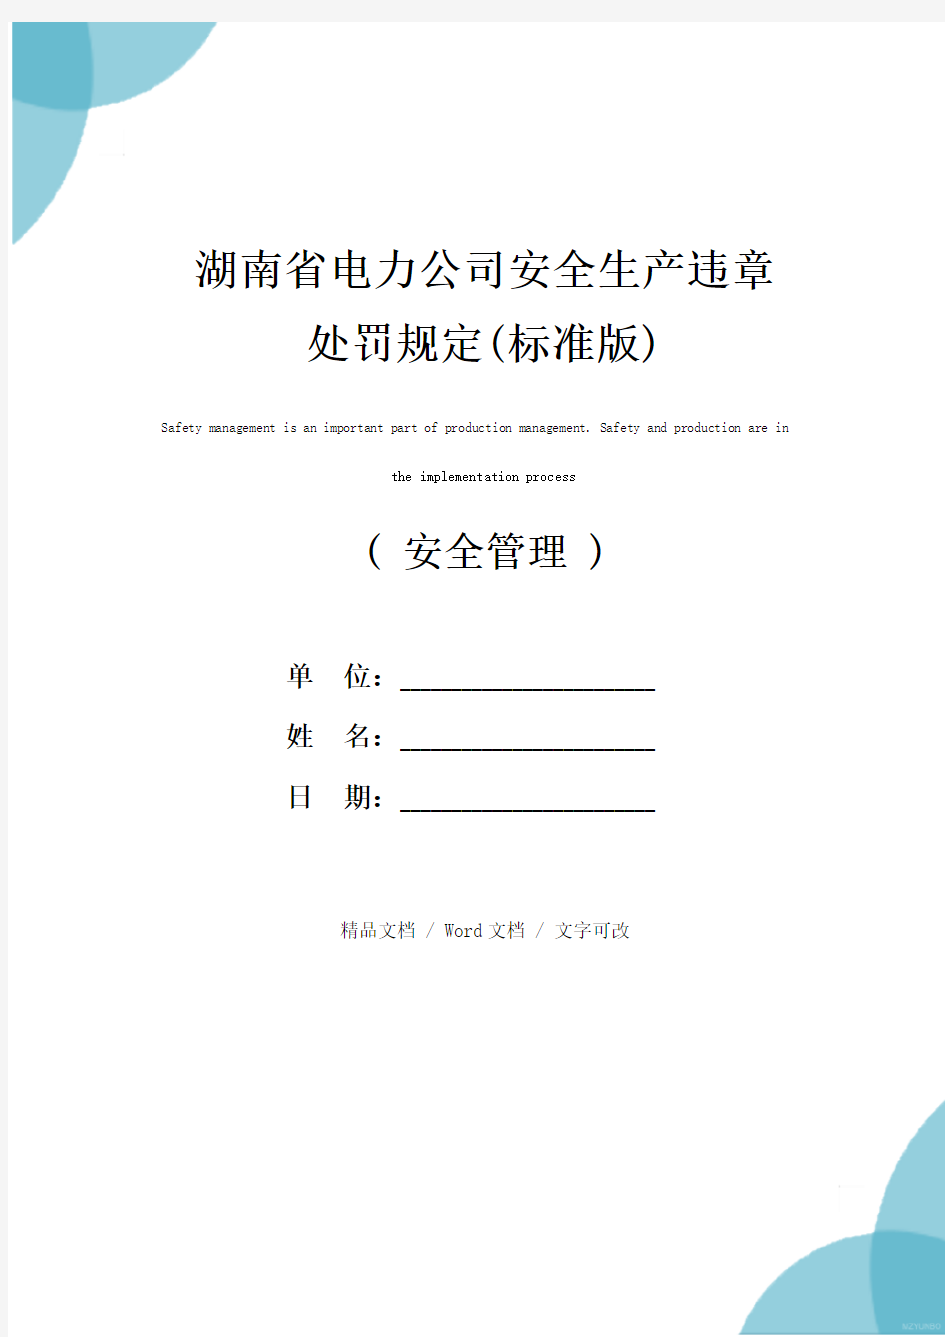 湖南省电力公司安全生产违章处罚规定(标准版)